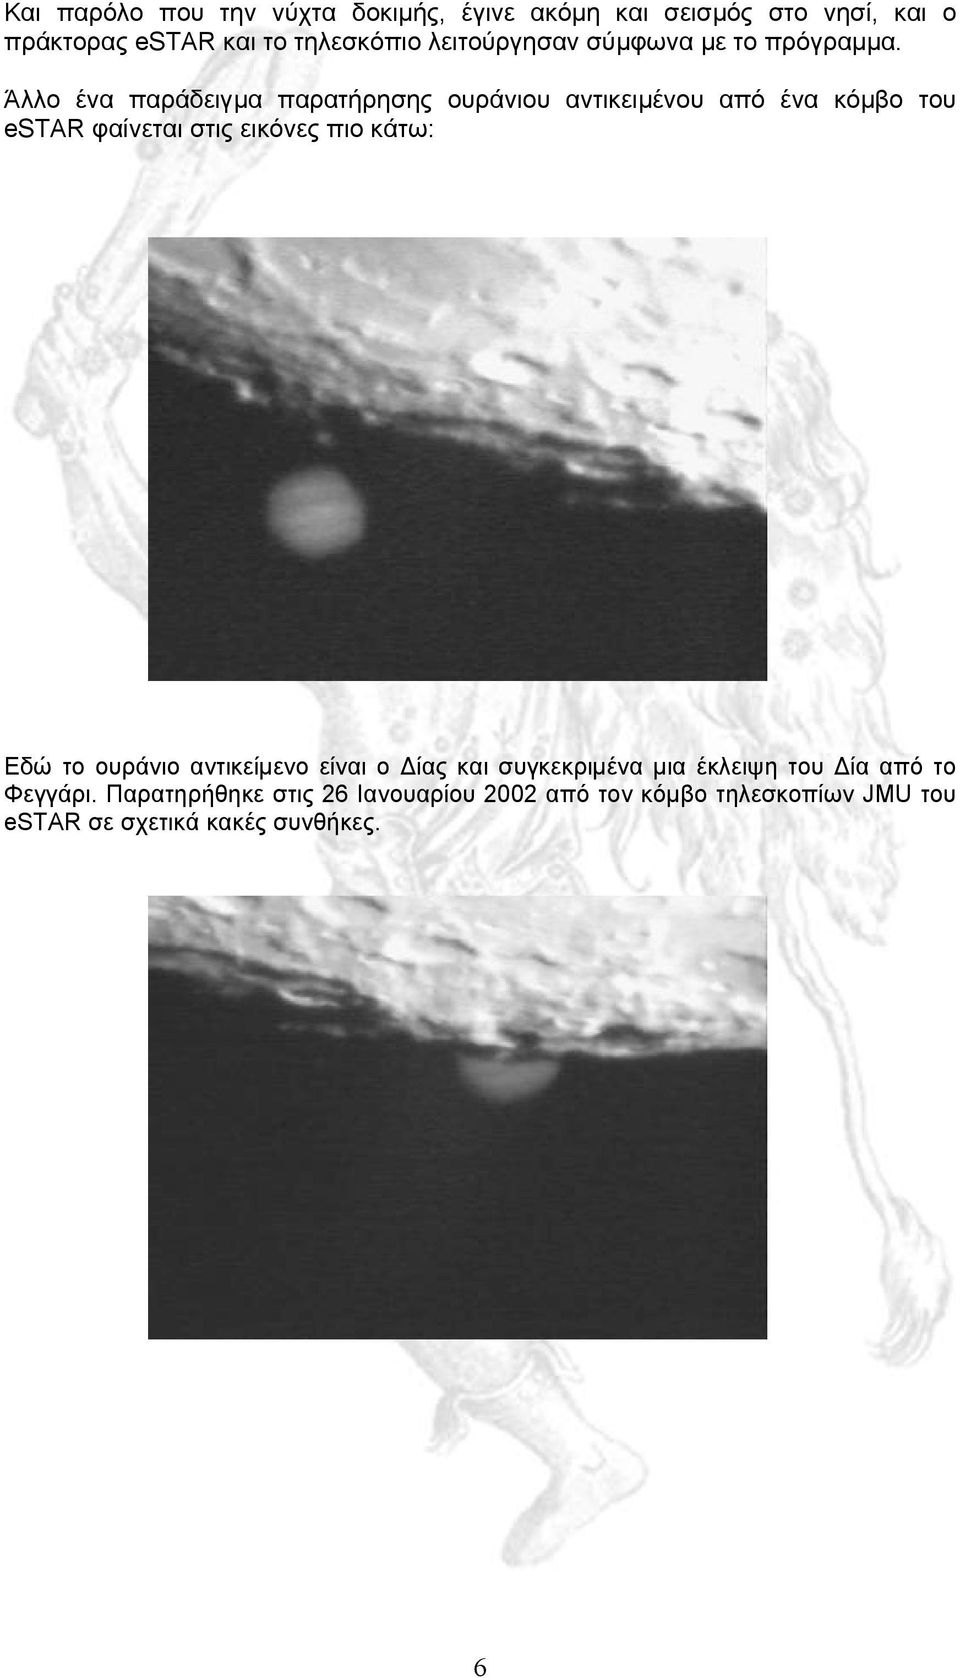 Άλλο ένα παράδειγµα παρατήρησης ουράνιου αντικειµένου από ένα κόµβο του estar φαίνεται στις εικόνες πιο κάτω: